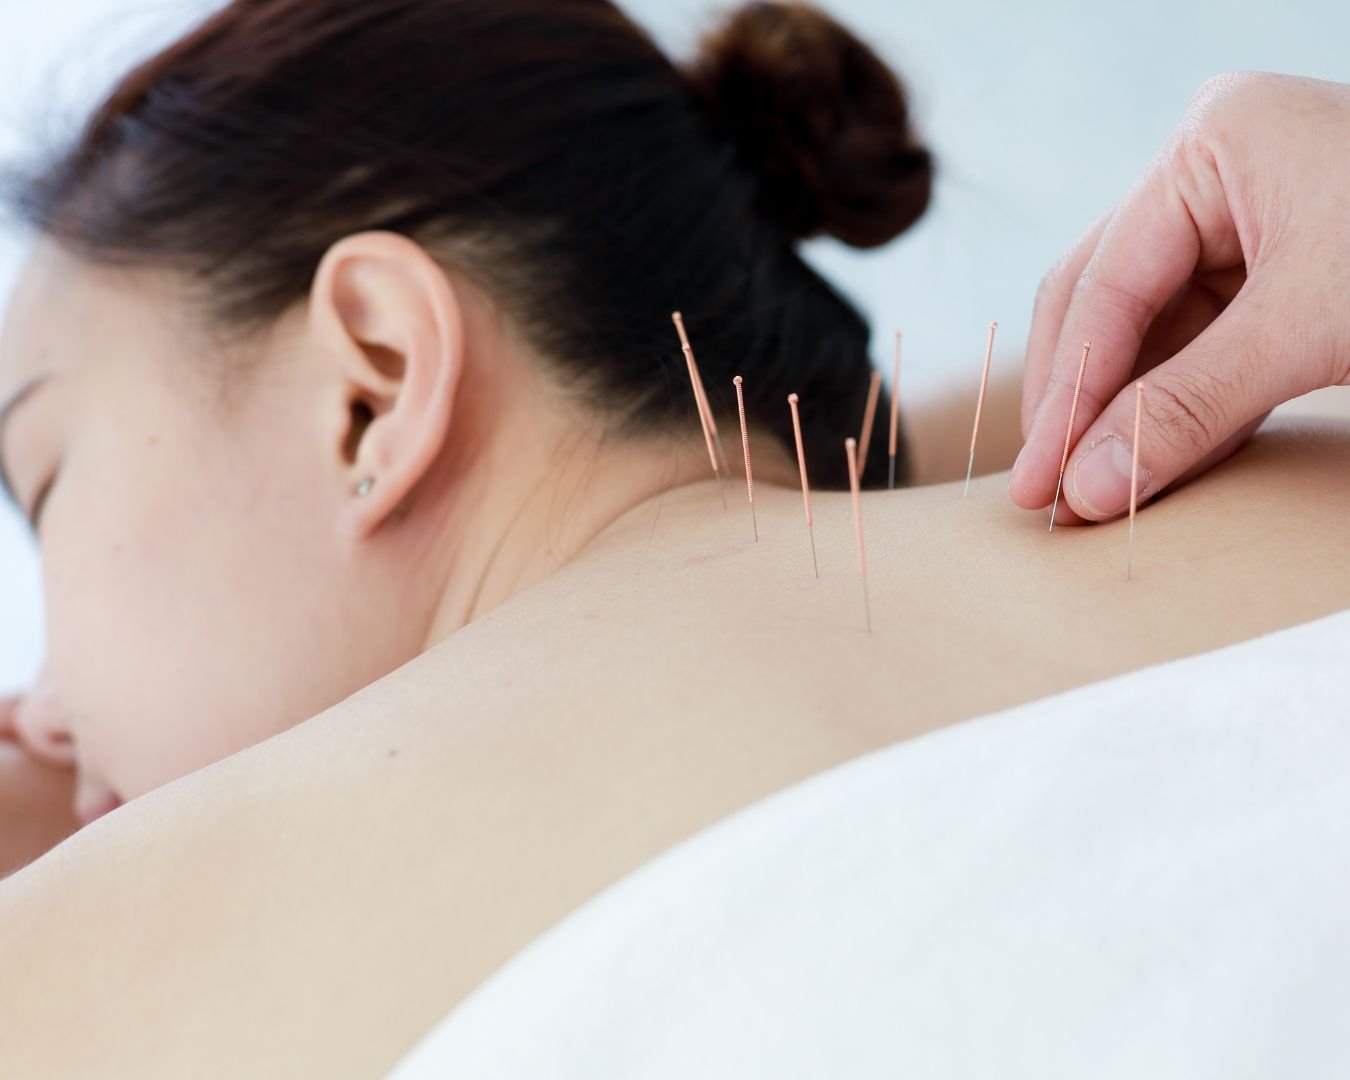 O que é acupuntura, e como ela ajuda a tratar várias doenças